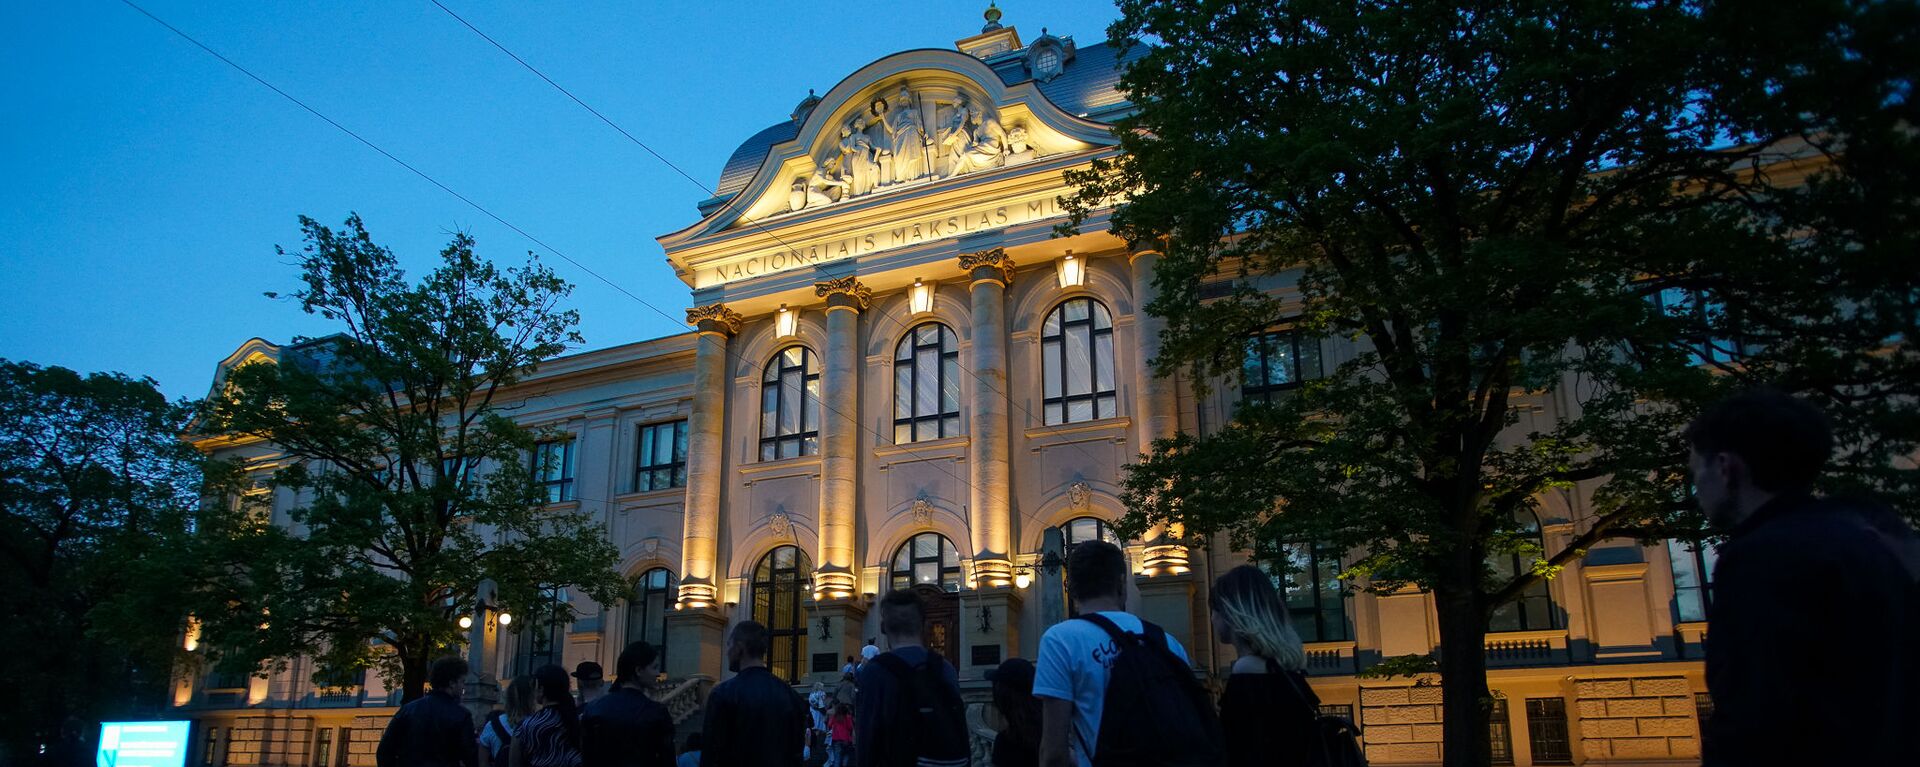 Посетители в очереди в Национальный художественный музей во время акции Ночь музеев в Риге - Sputnik Латвия, 1920, 30.04.2021